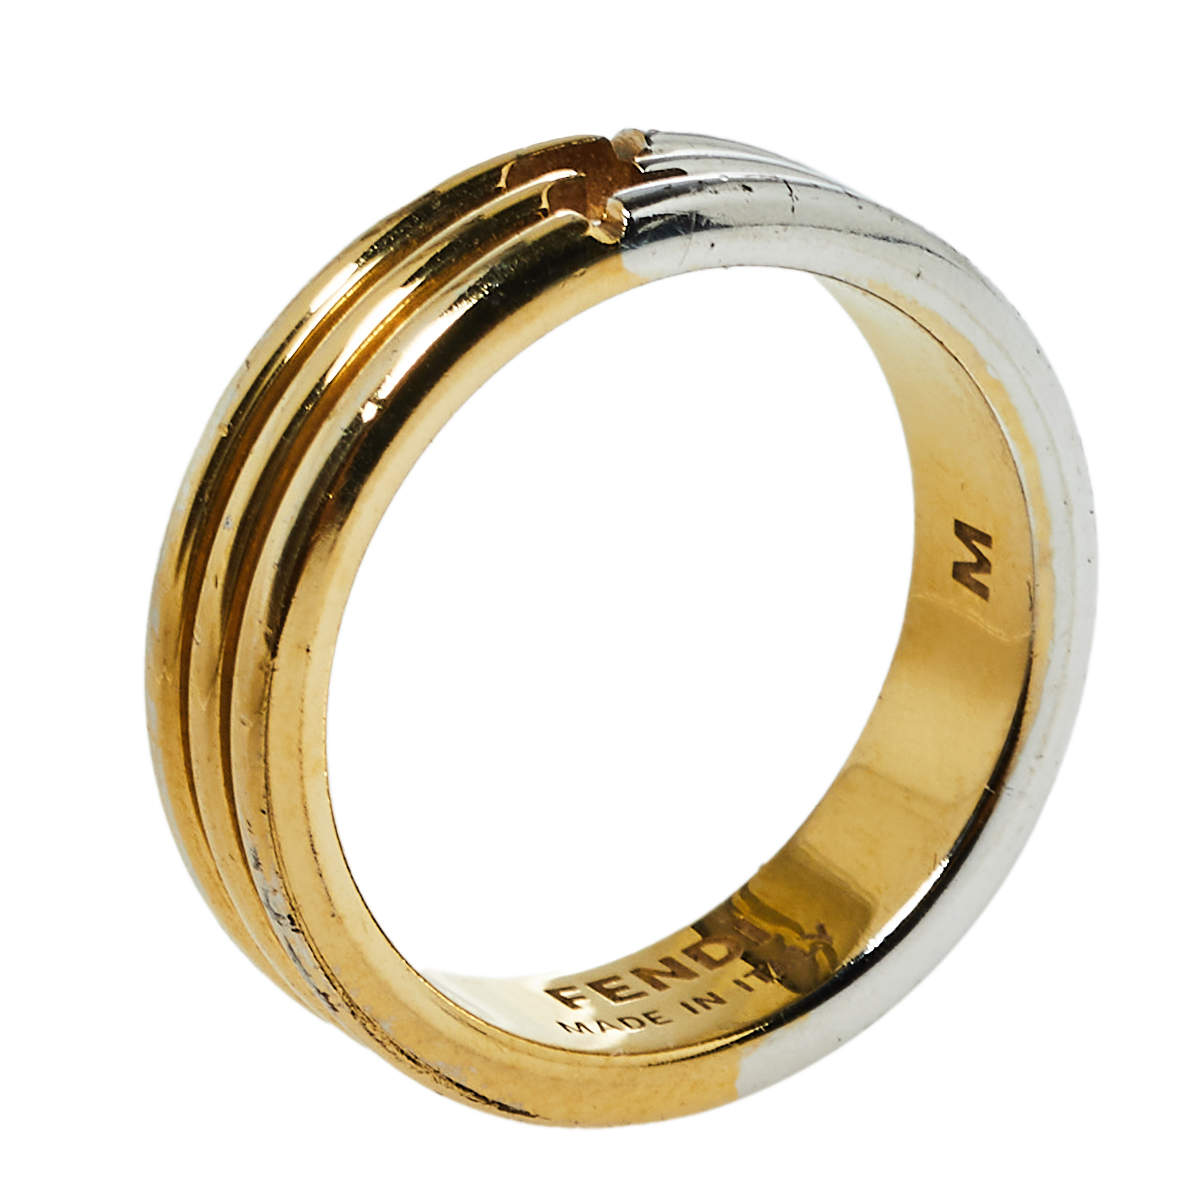 خاتم فندي ذا فنديستا حلقة رفيعة لونين مقاس وسط (ميديوم)